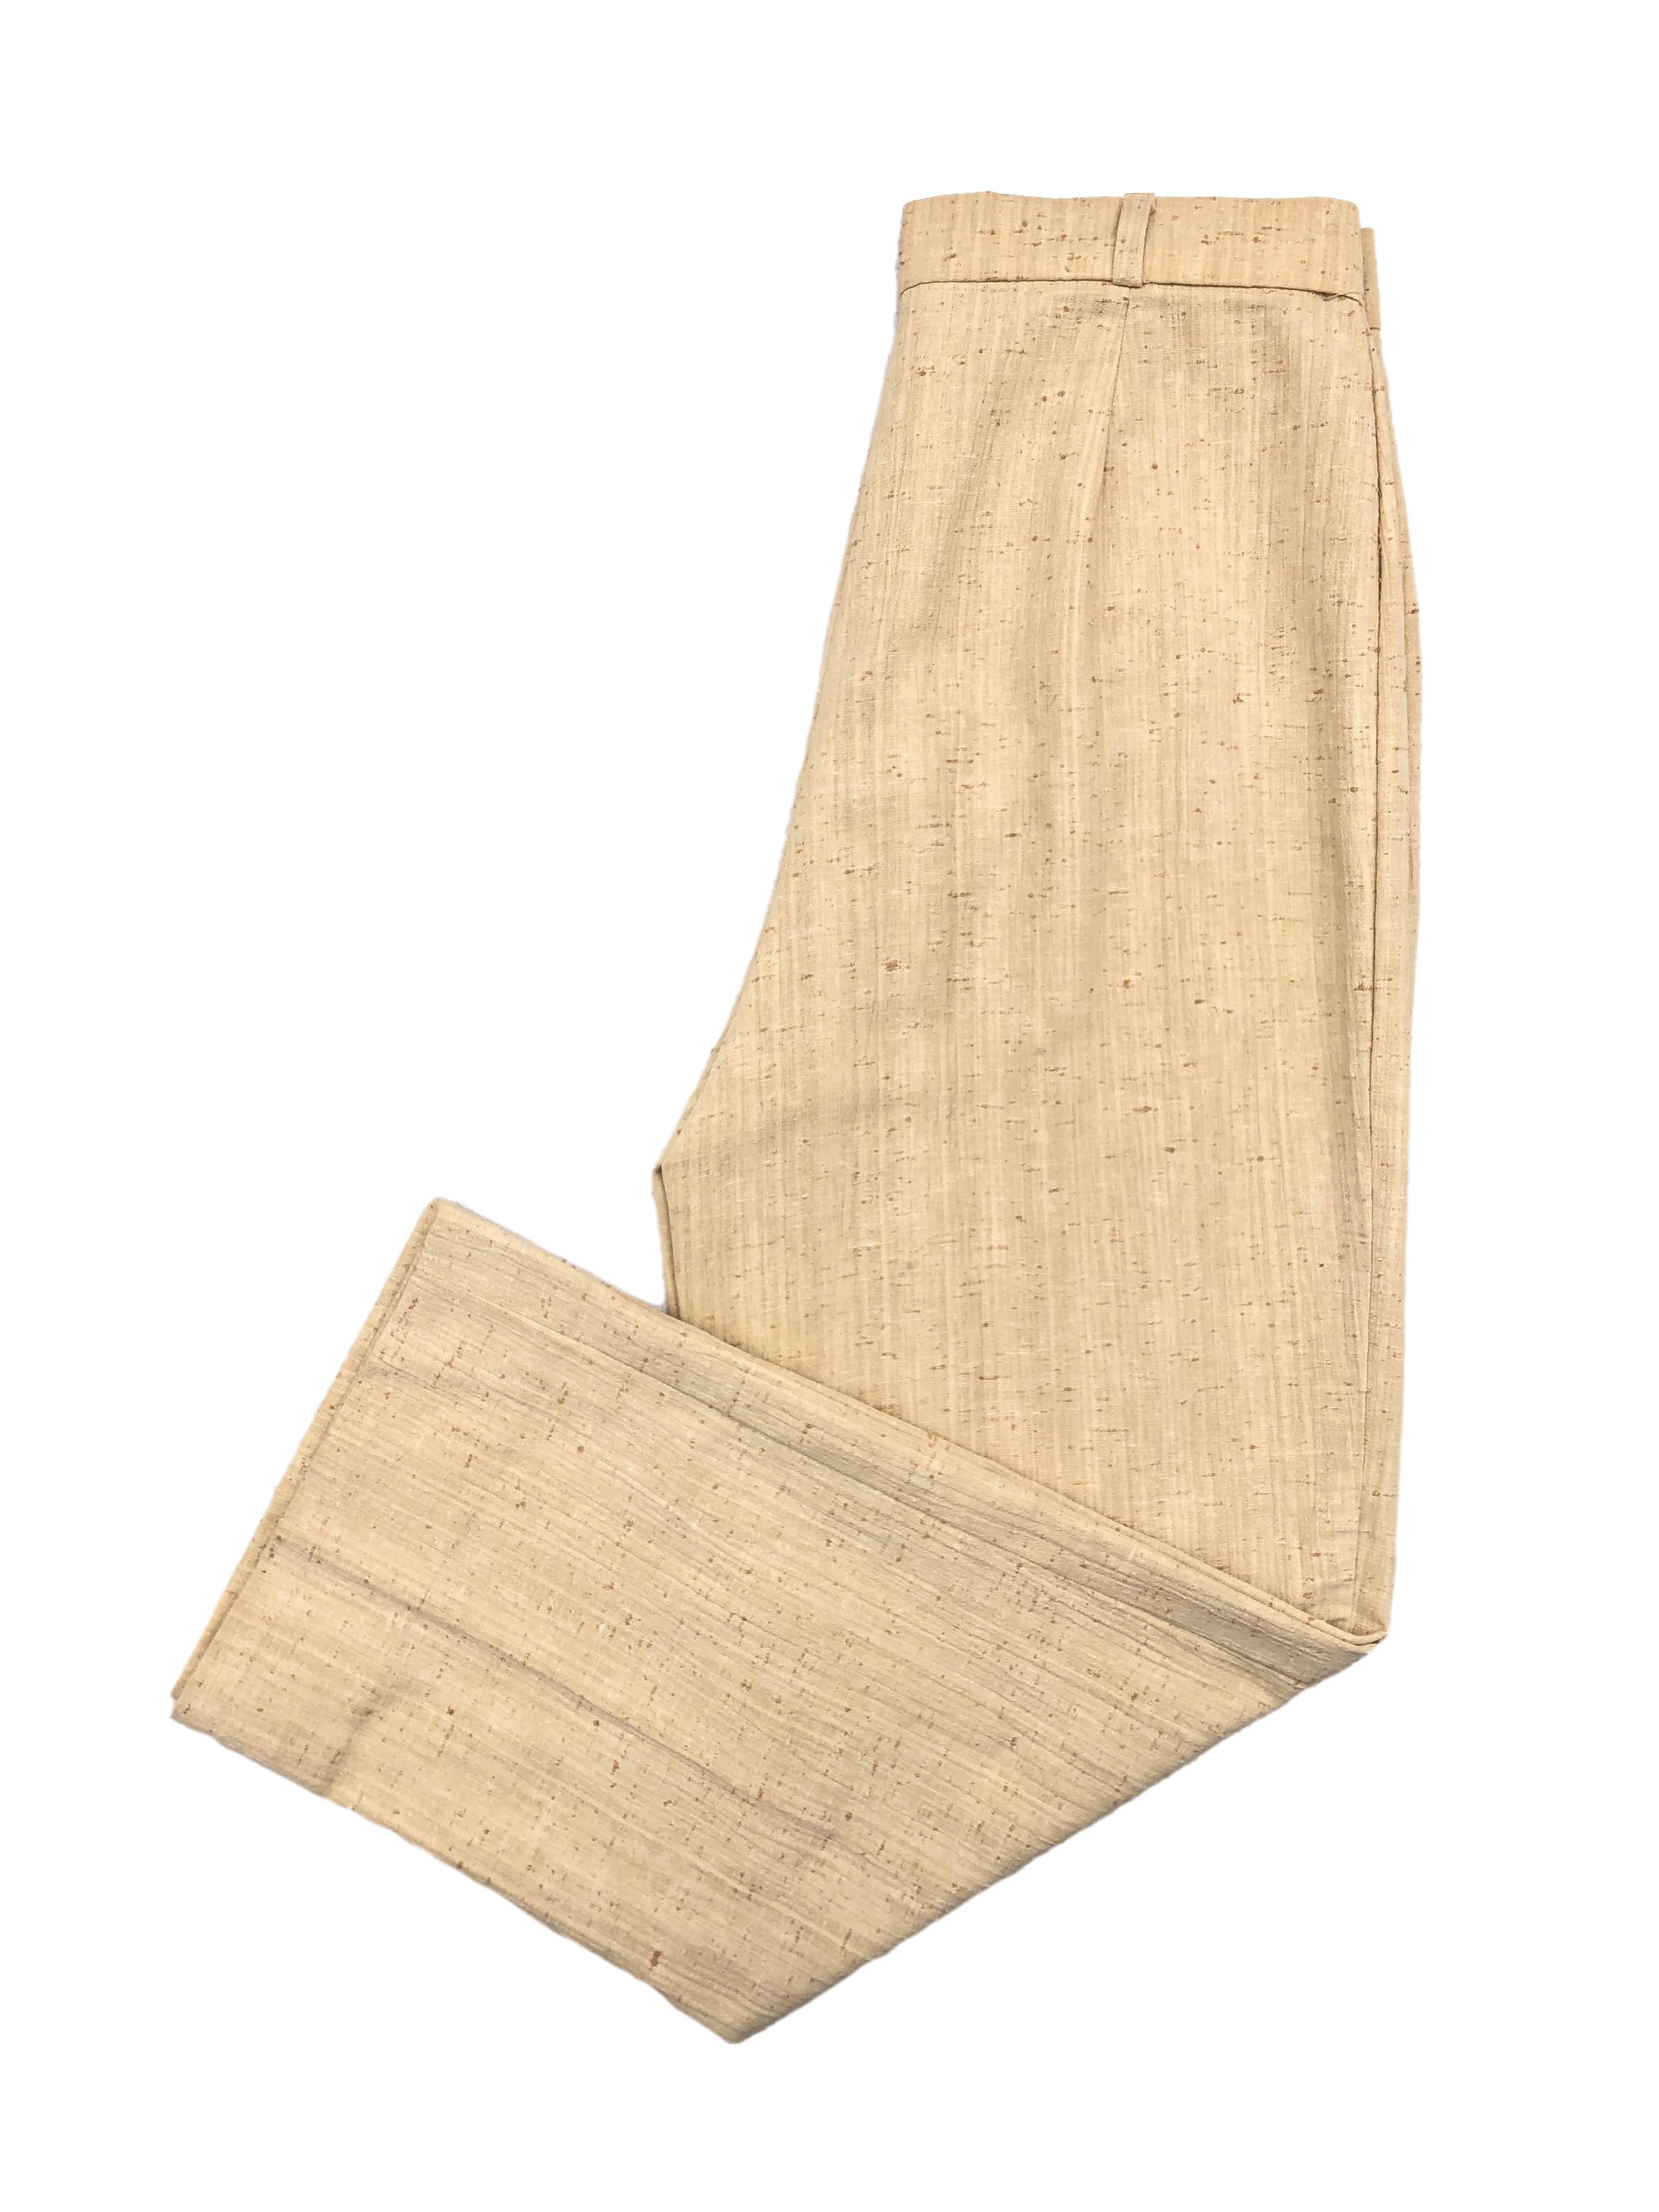 Pantalón vintage a la cintura, amarillo con textura rústica, corte recto. Cintura 75cm Tiro 33cm Largo 98cm